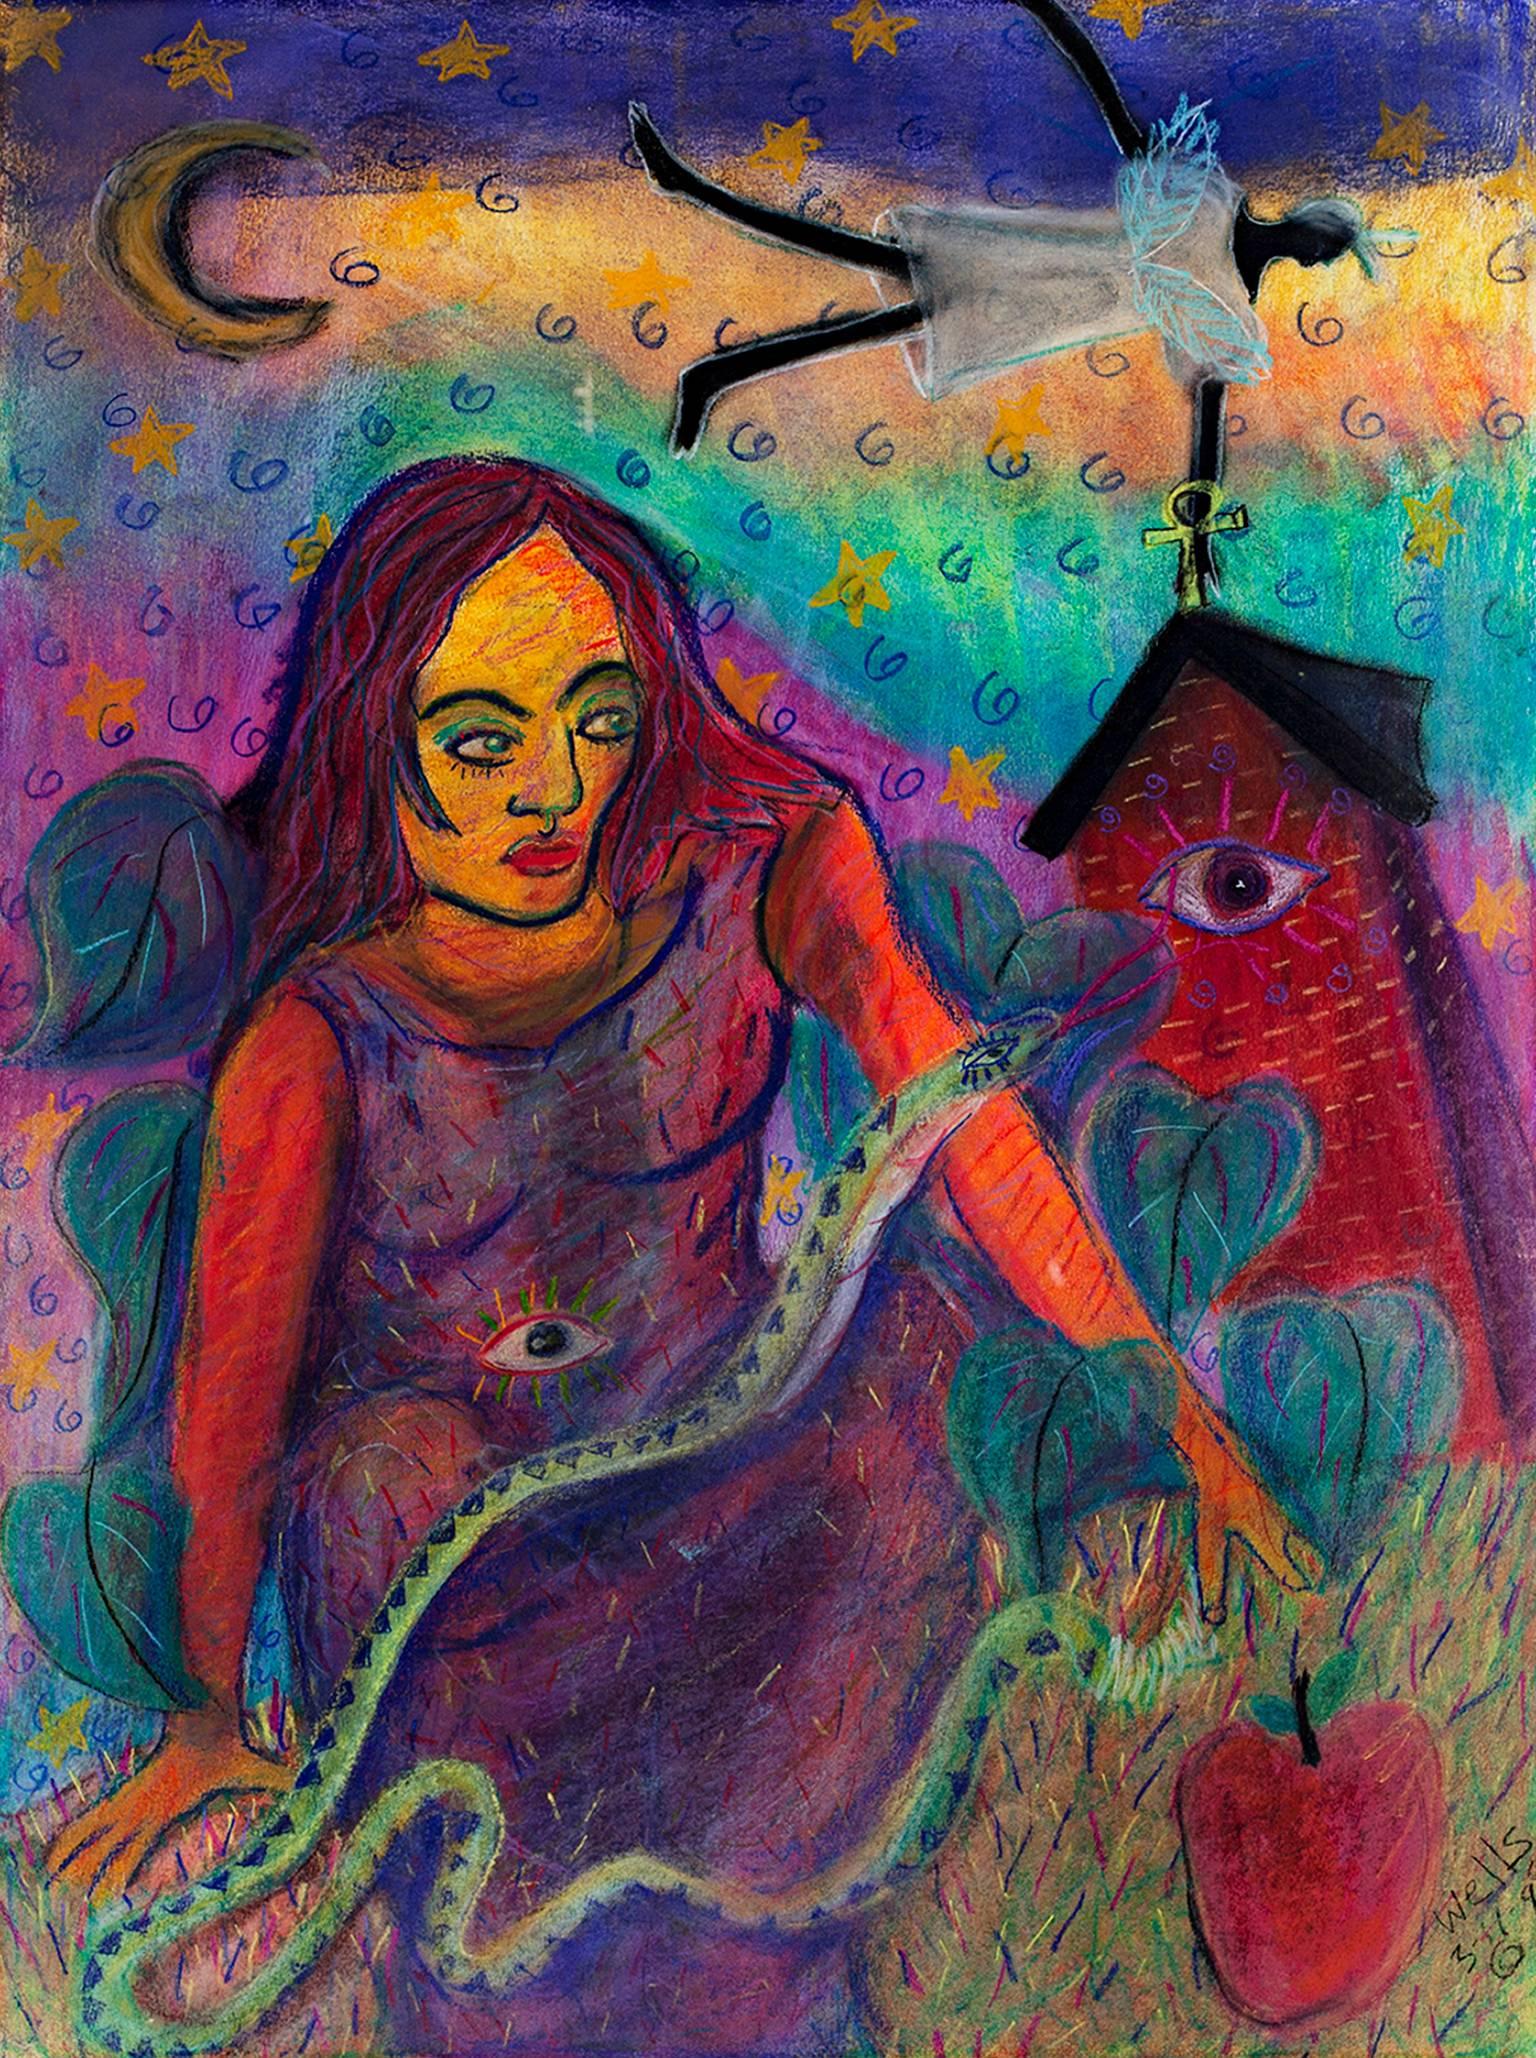 "Spiritual Bounds" ist eine Original-Pastellzeichnung auf Papier von Della Wells. Der Künstler hat das Werk unten rechts signiert. Dieses Werk zeigt eine Frau, die eine Schlange um ihren Arm gewickelt hat, während sie nach einem Apfel greift. Die